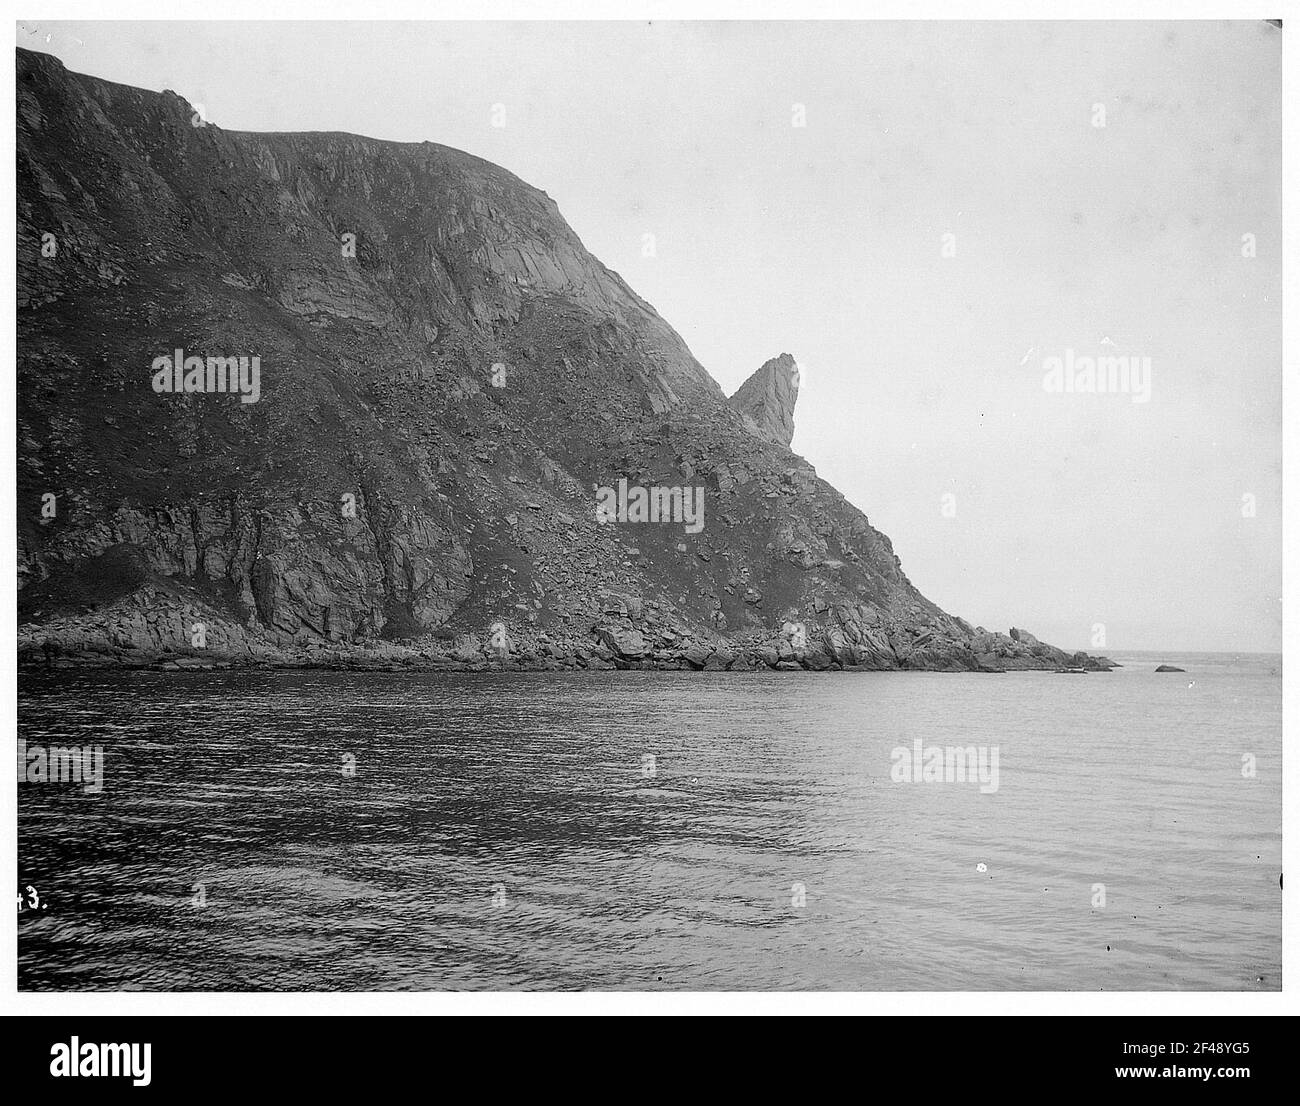 Norvegia: Il Capo Nord. Vista da un piroscafo passeggeri in alto mare dell'Hapag (probabilmente "Victoria Luise") su una costa ripida con un naso di roccia attaccante Foto Stock